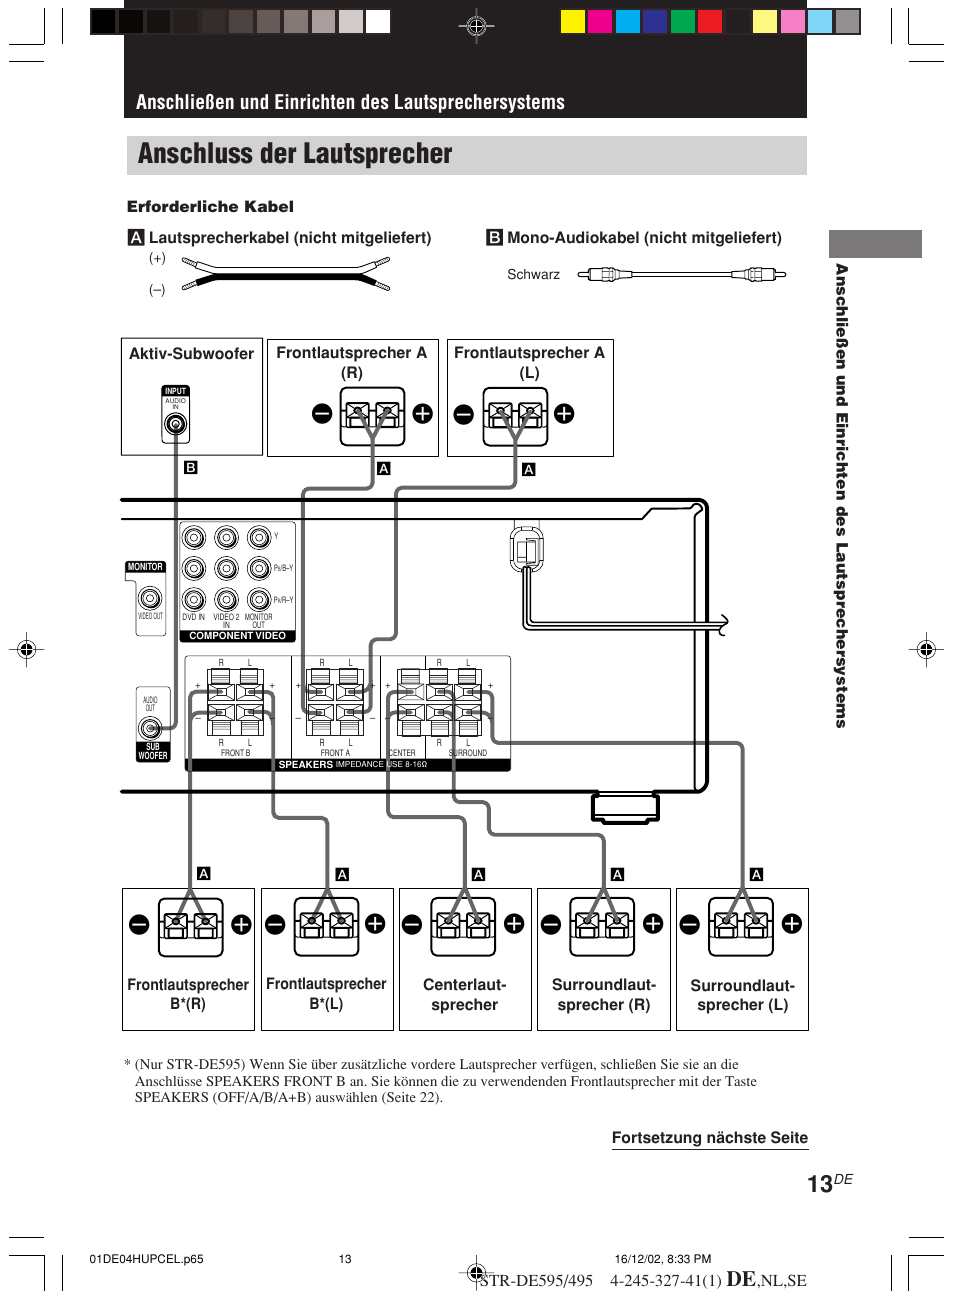 Anschluss der lautsprecher, Ee e e, Anschließen und einrichten des lautsprechersystems | Sony STR-DE495 Benutzerhandbuch | Seite 13 / 142